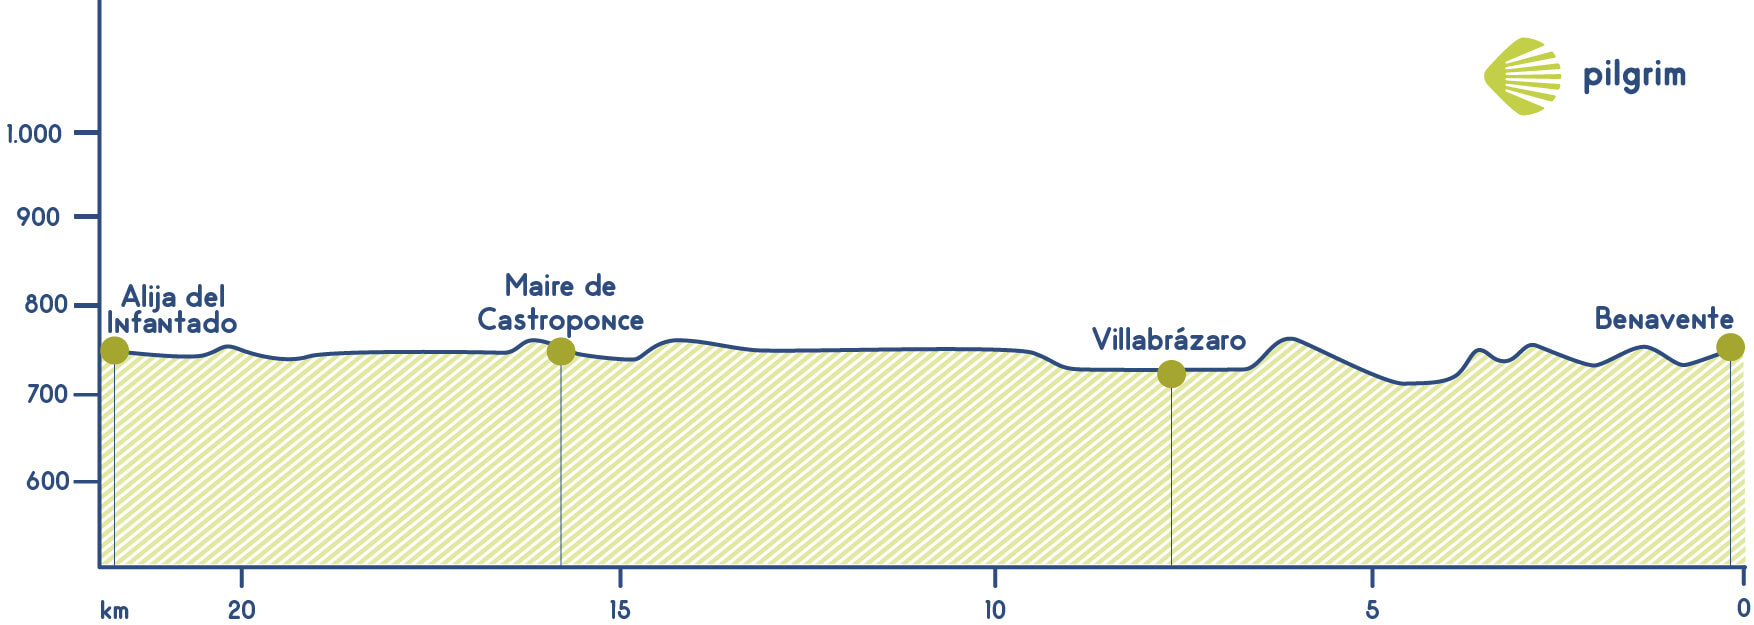 Stage 25 Vía de la Plata